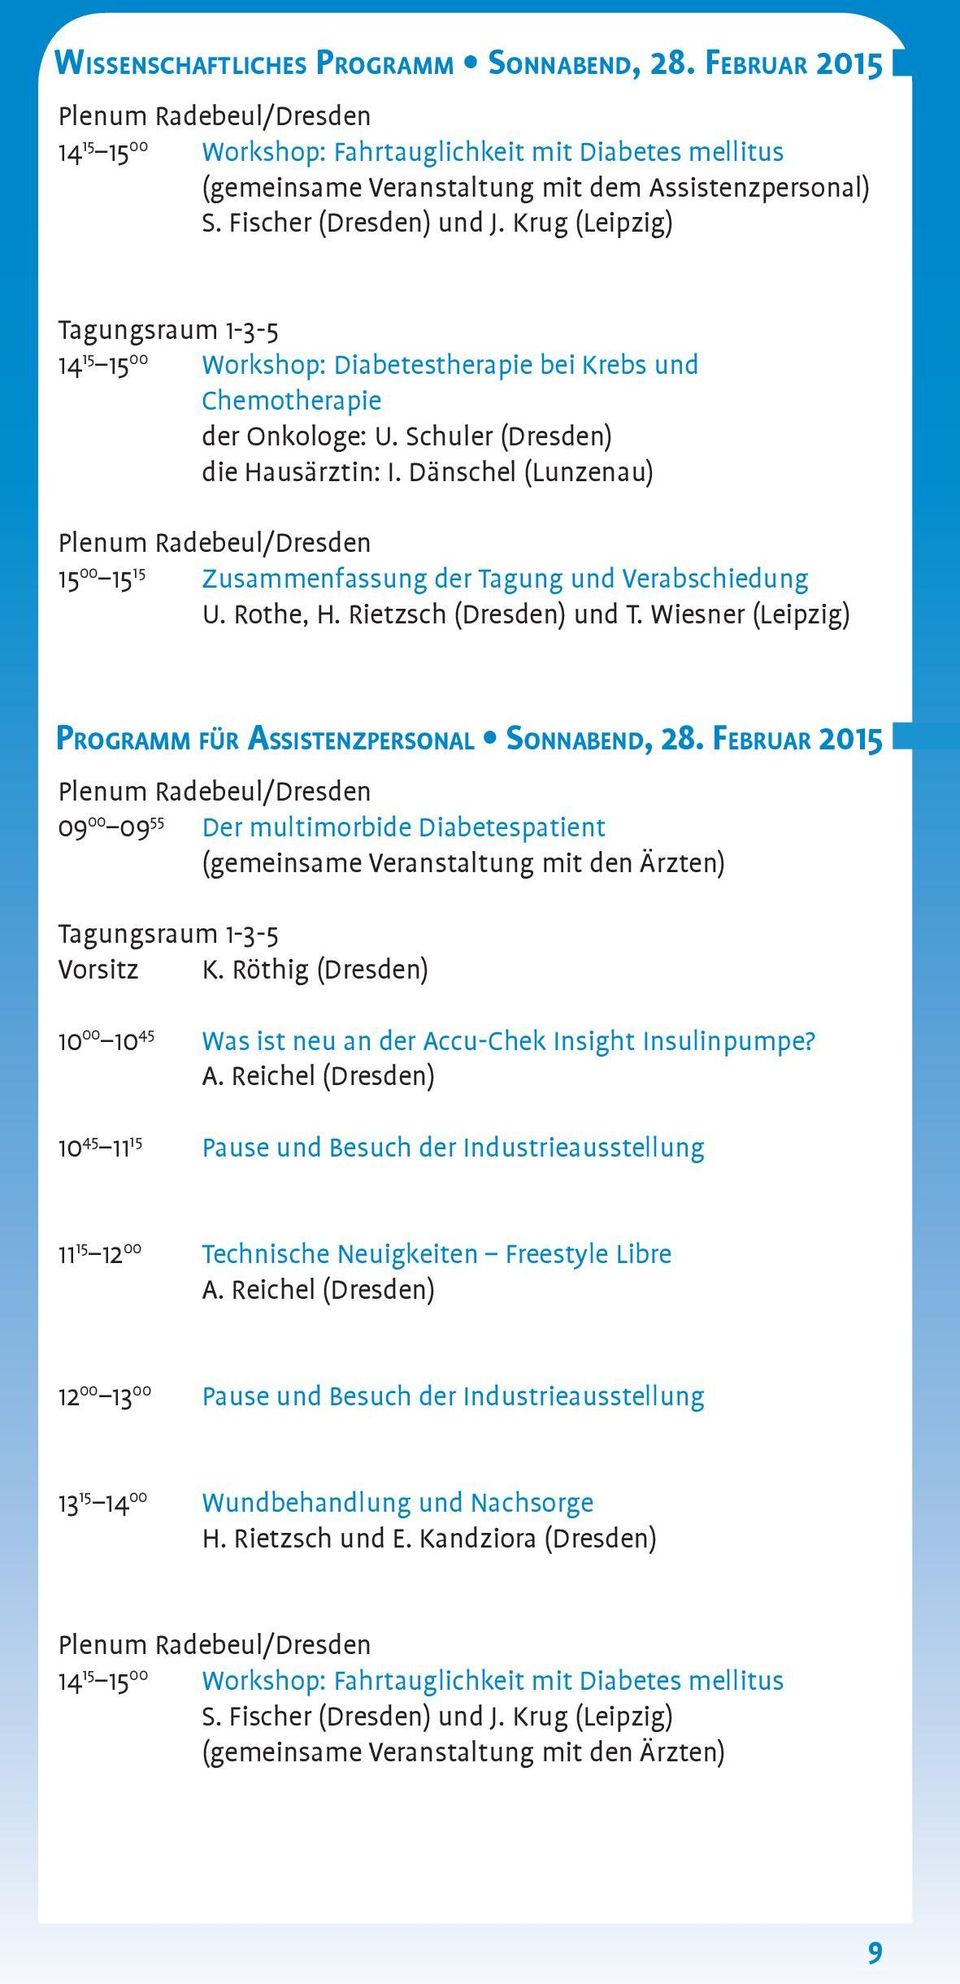 Dänschel (Lunzenau) 15 00 15 15 Zusammenfassung der Tagung und Verabschiedung U. Rothe, H. Rietzsch (Dresden) und T. Wiesner (Leipzig) programm für Assistenzpersonal Sonnabend, 28.